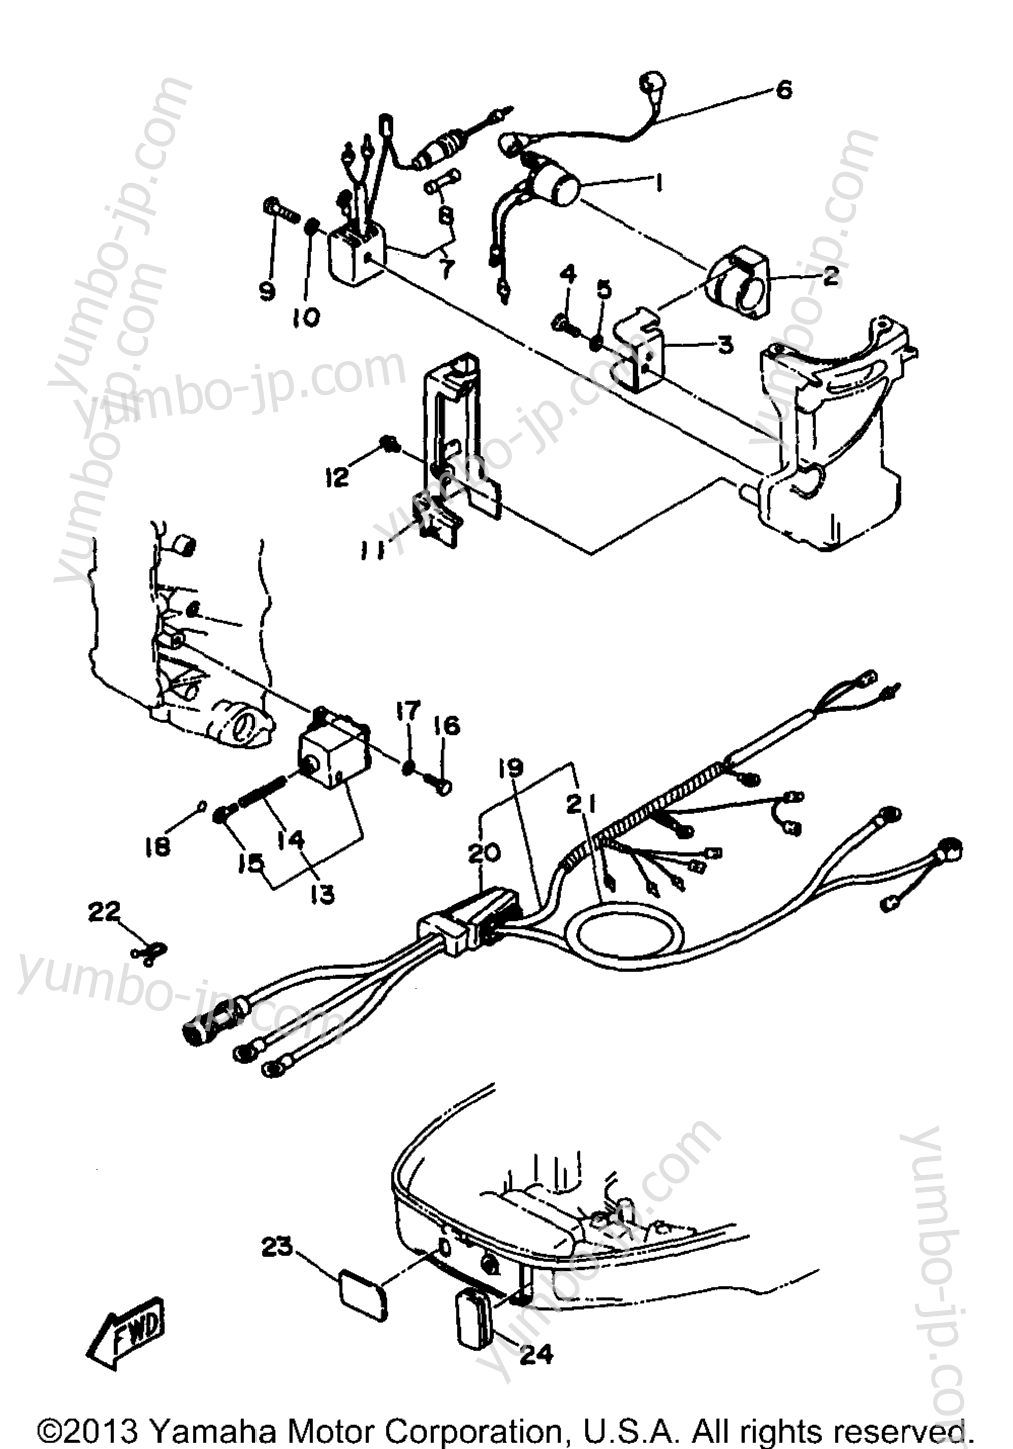 Electric Parts 2 (30Er) для лодочных моторов YAMAHA 30MLHV 1997 г.